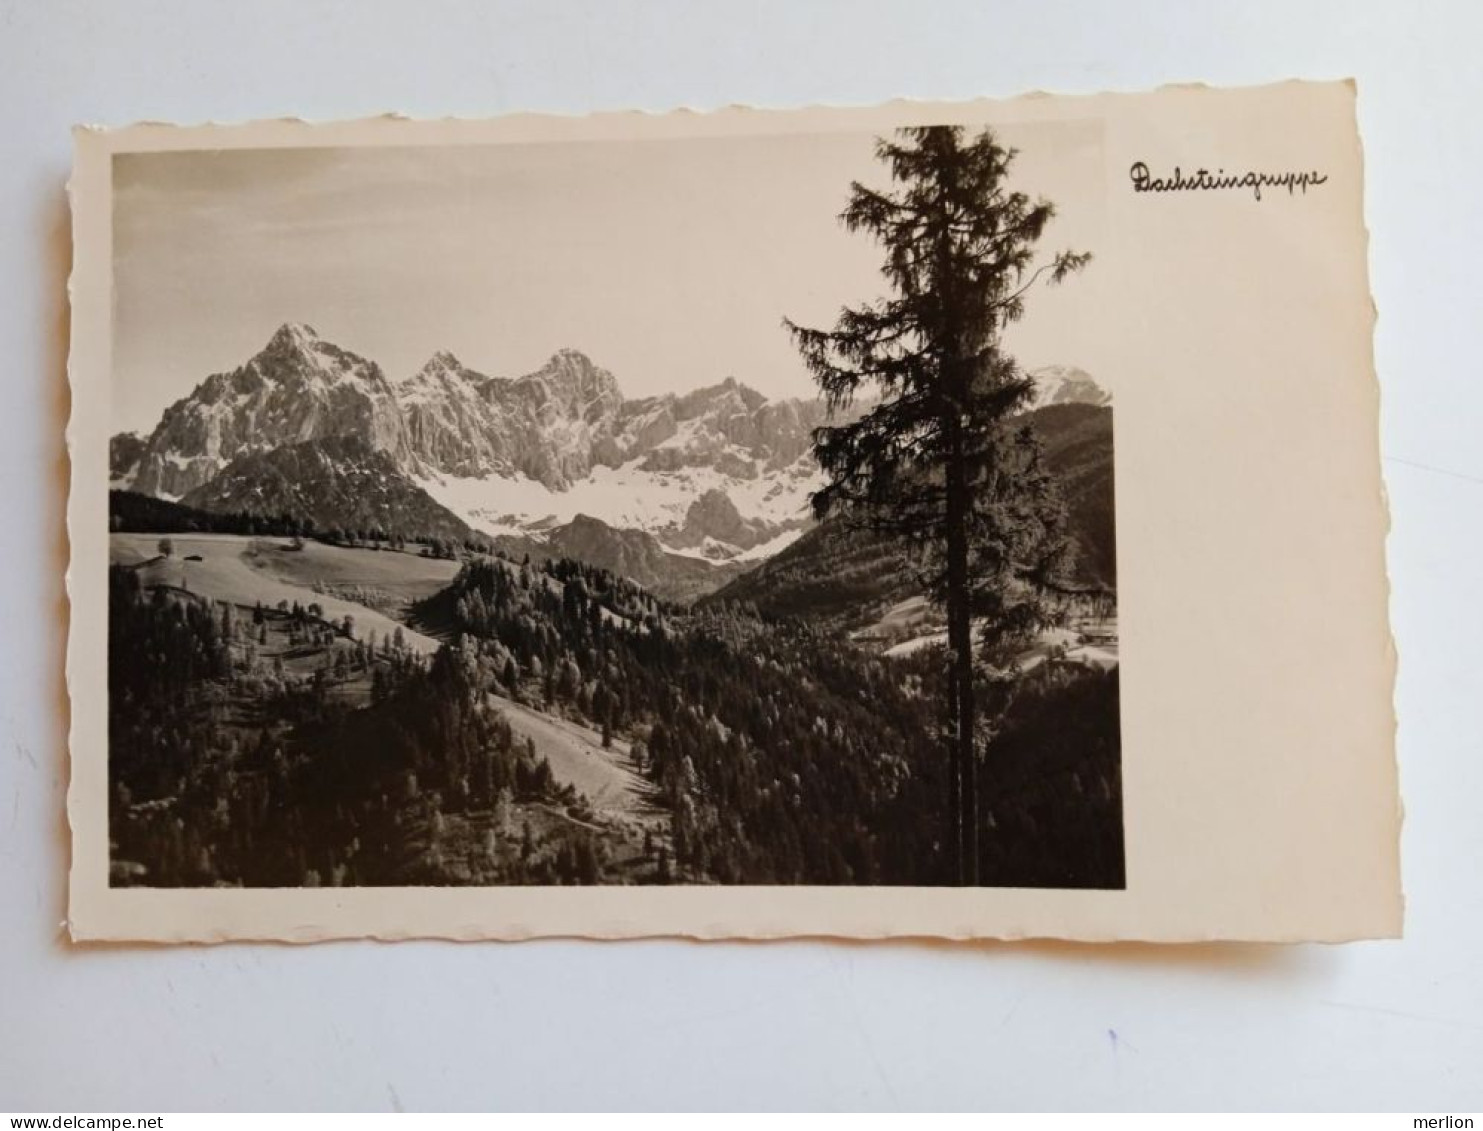 D202708   AK- CPA -   DACHSTEIN - Dachsteingruppe  - Steiermark - Österreich   - Ca 1940  FOTO-AK - Ramsau Am Dachstein